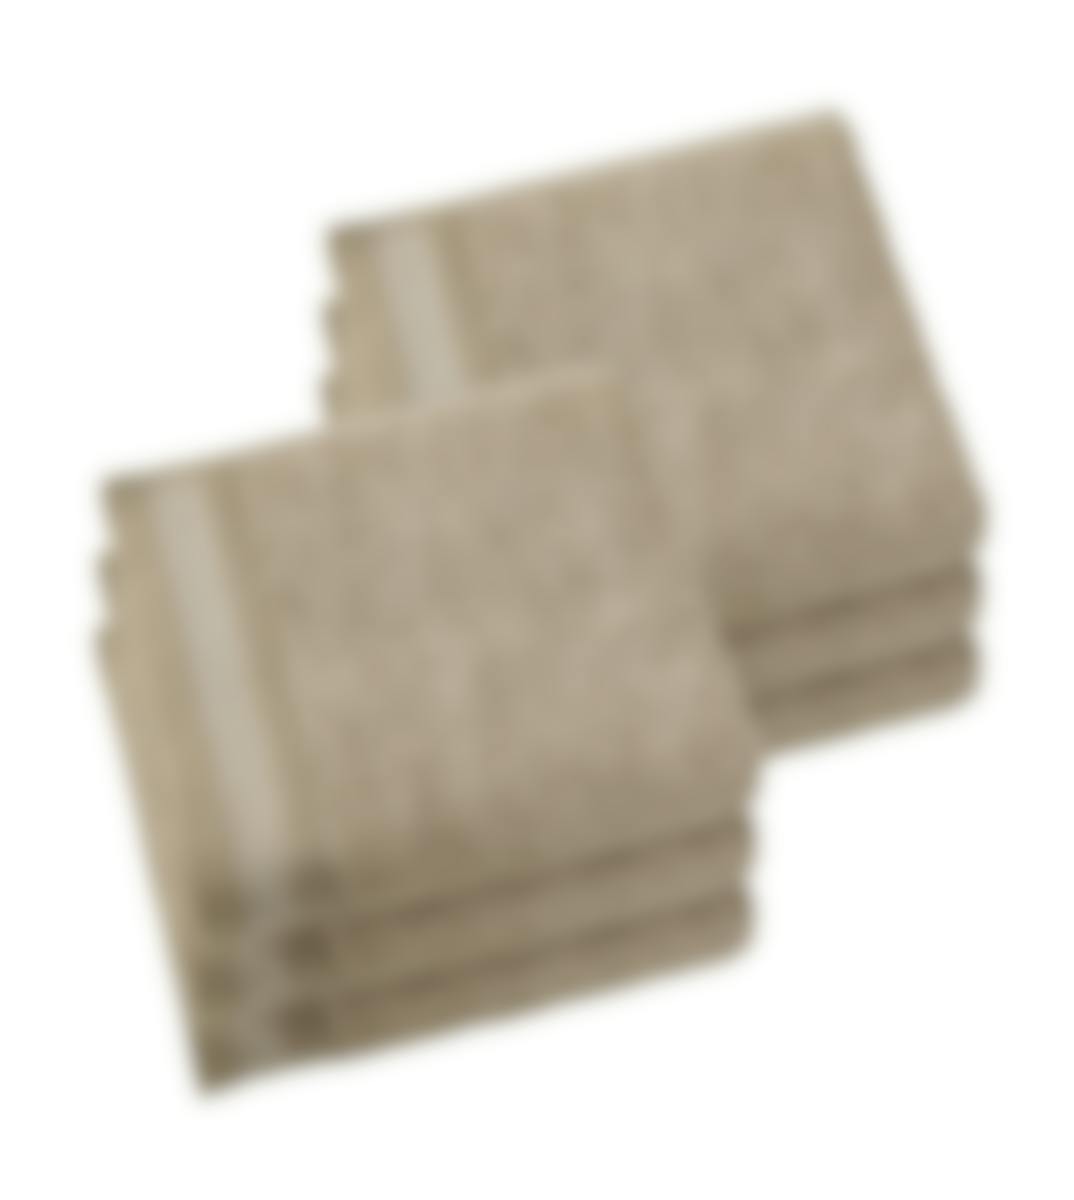 De Witte Lietaer serviette de bain Contessa taupe 50 x 100 cm set de 6